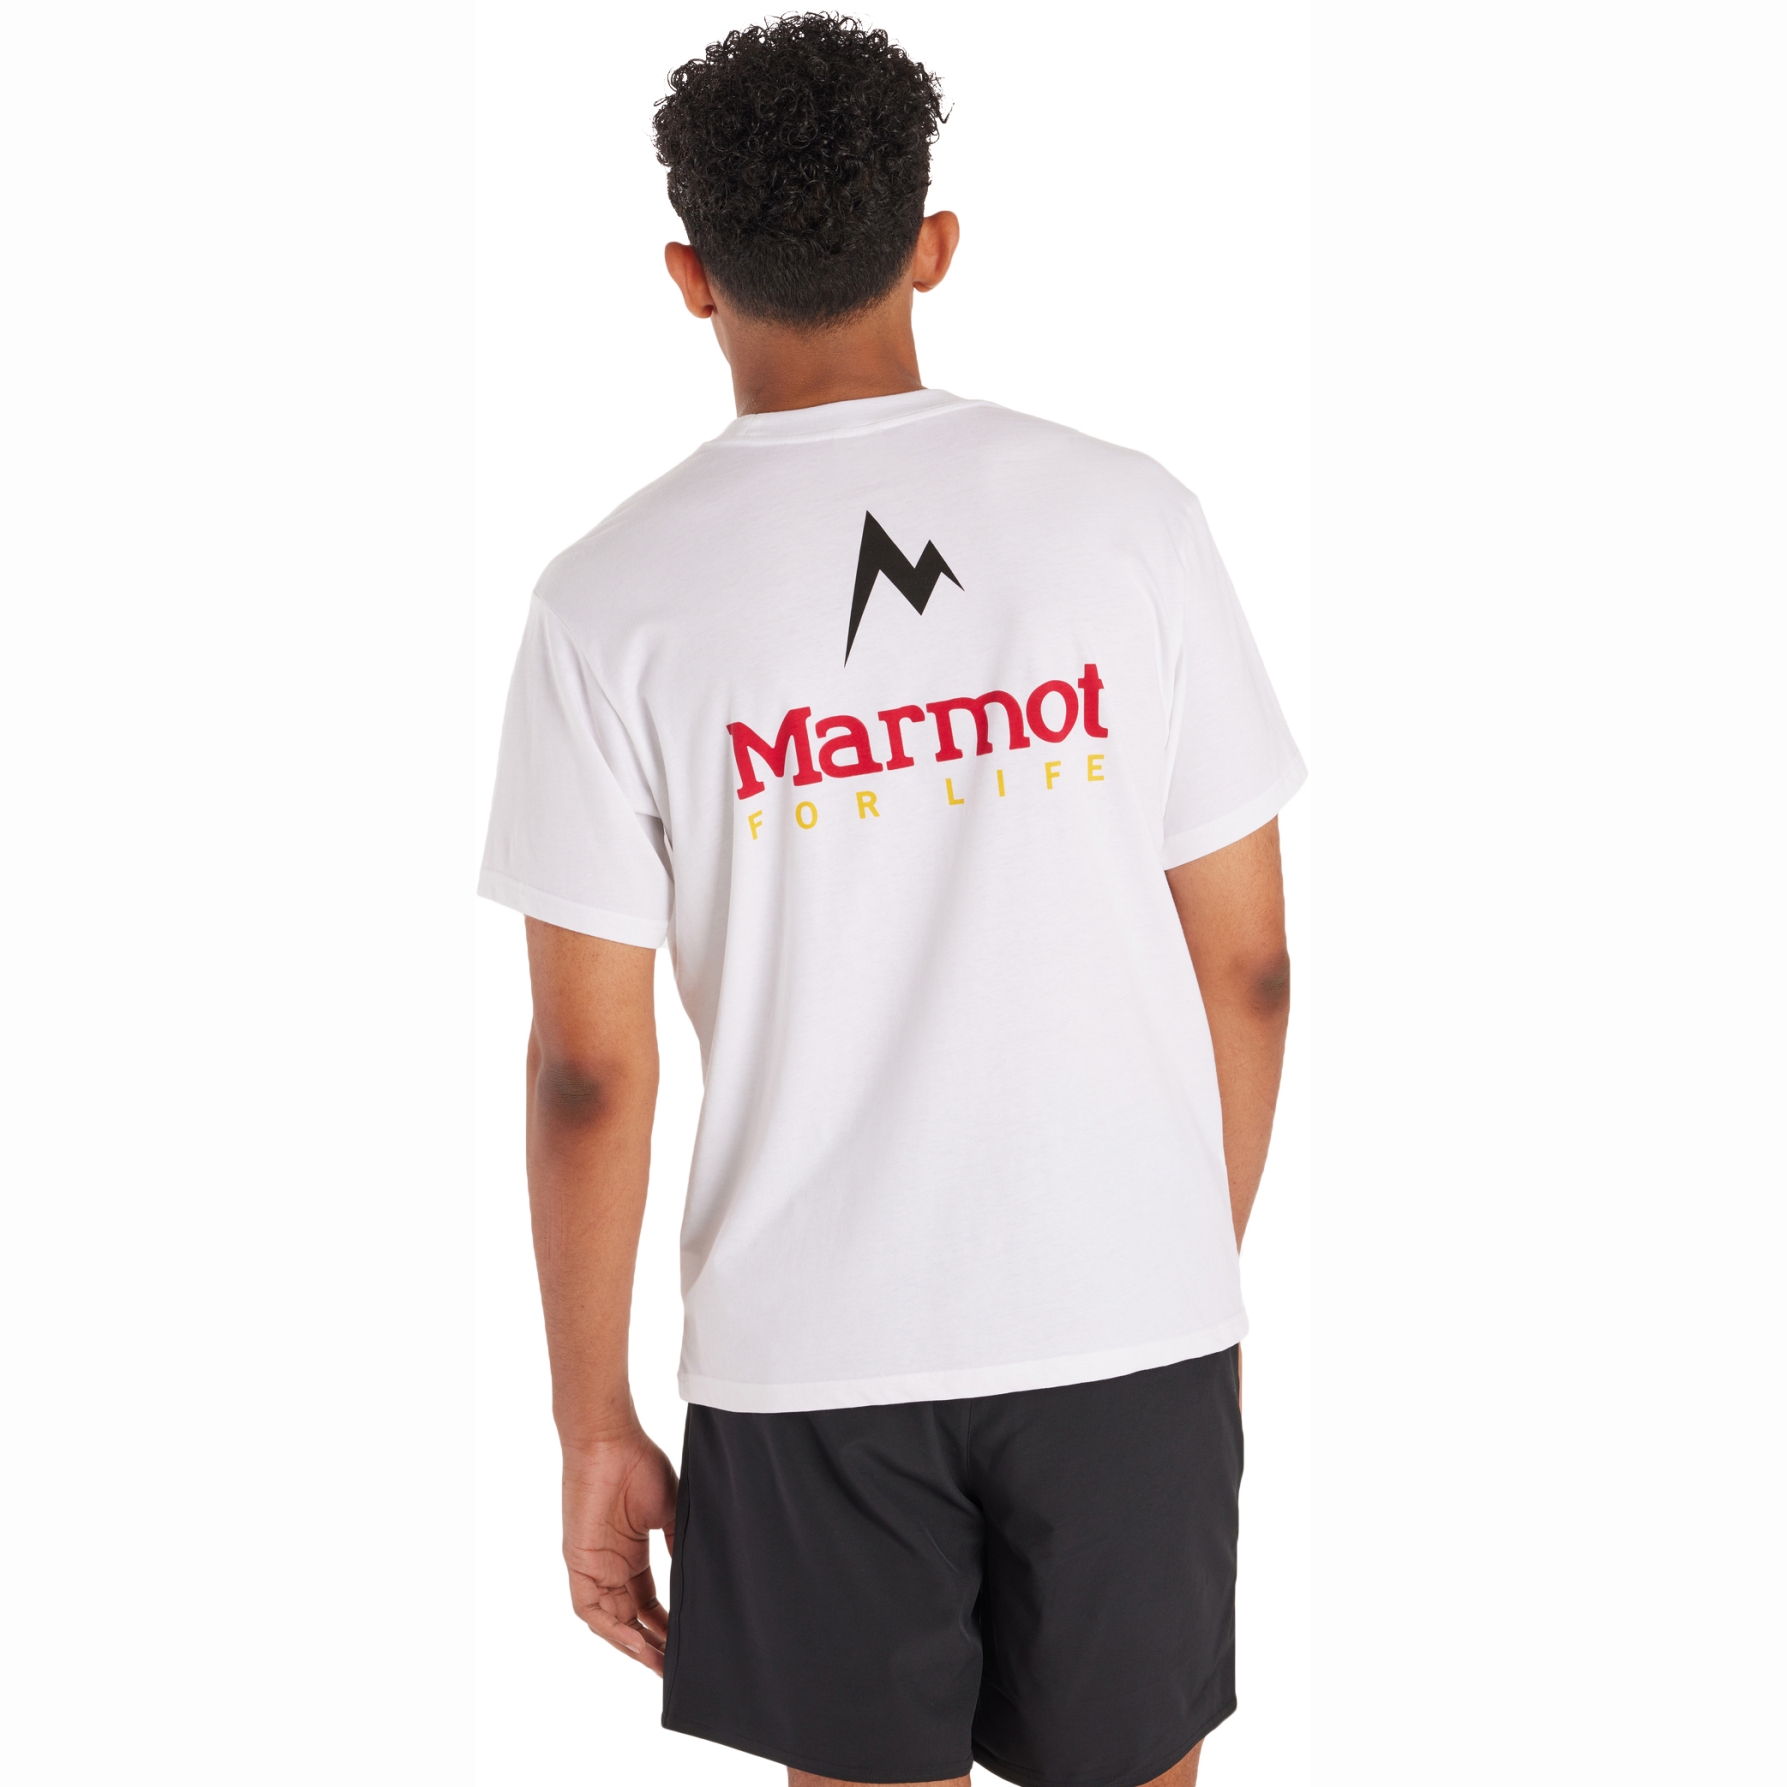 Produktbild von Marmot For Life T-Shirt Herren - weiß